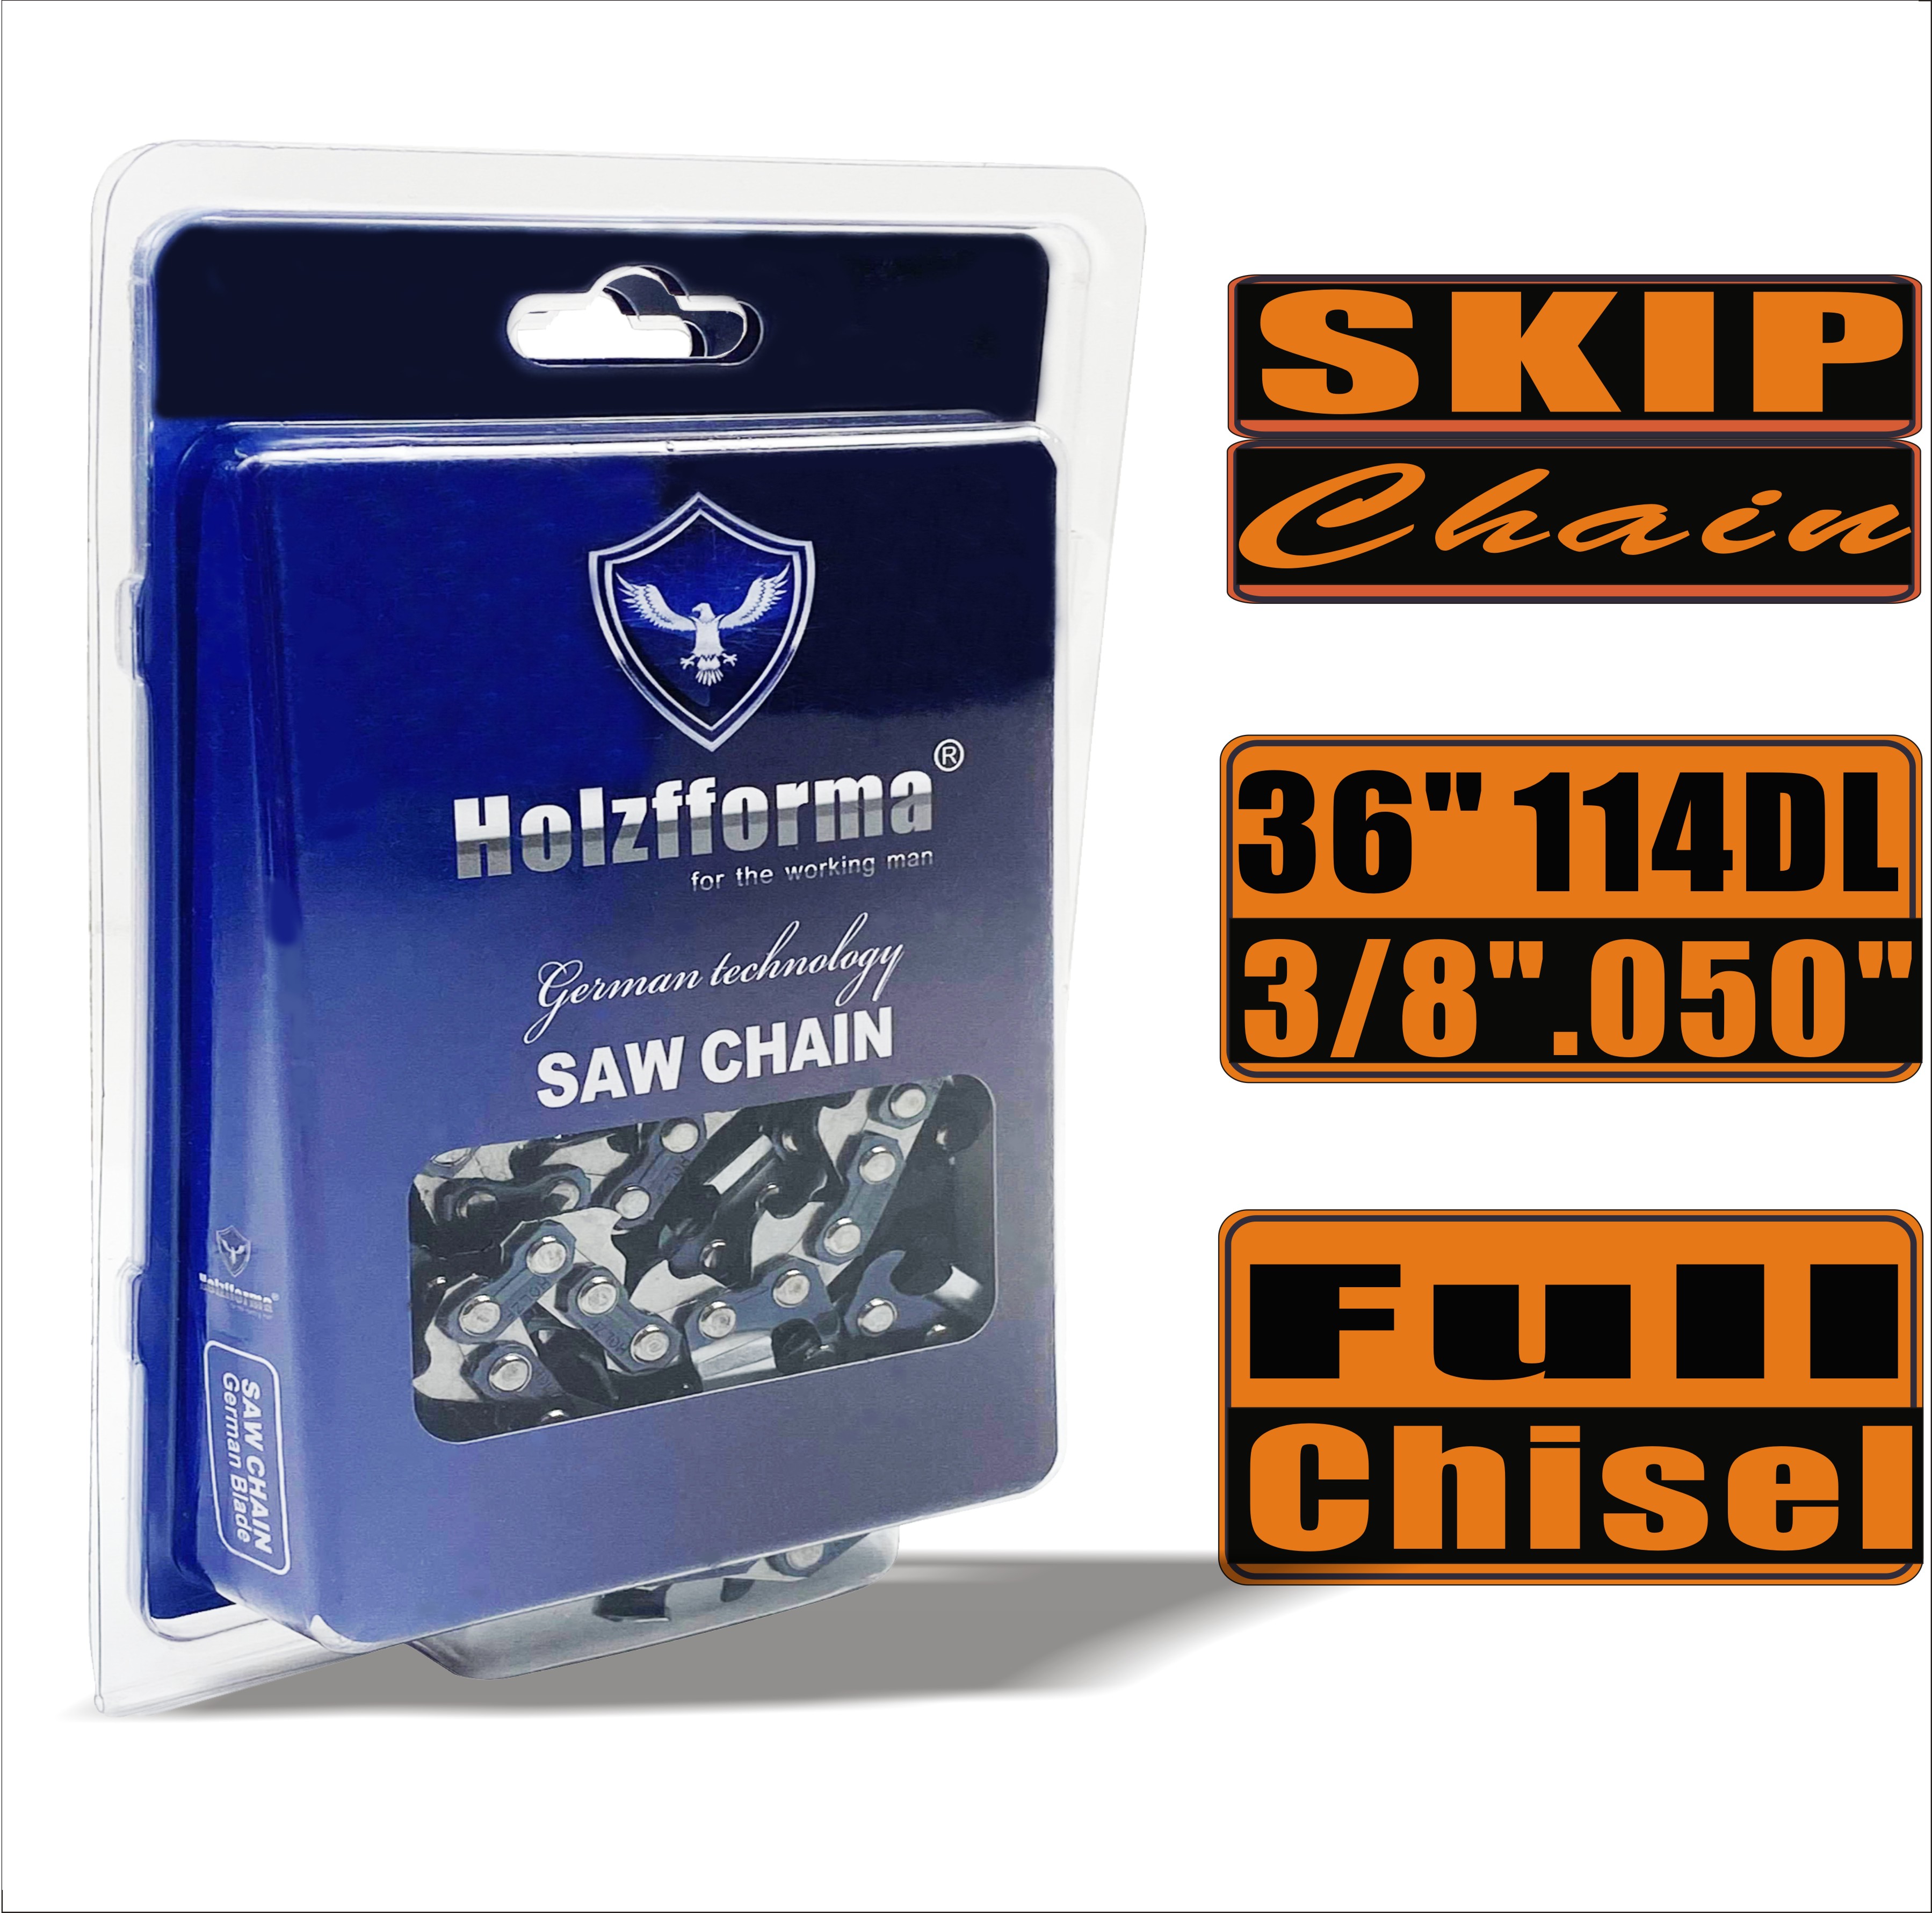 Holzfforma® Skip Chain Full Chisel 3/8'' 0,050'' 36 дюймов 114DL цепи для Бензопилы Высококачественные немецкие лезвия и звенья